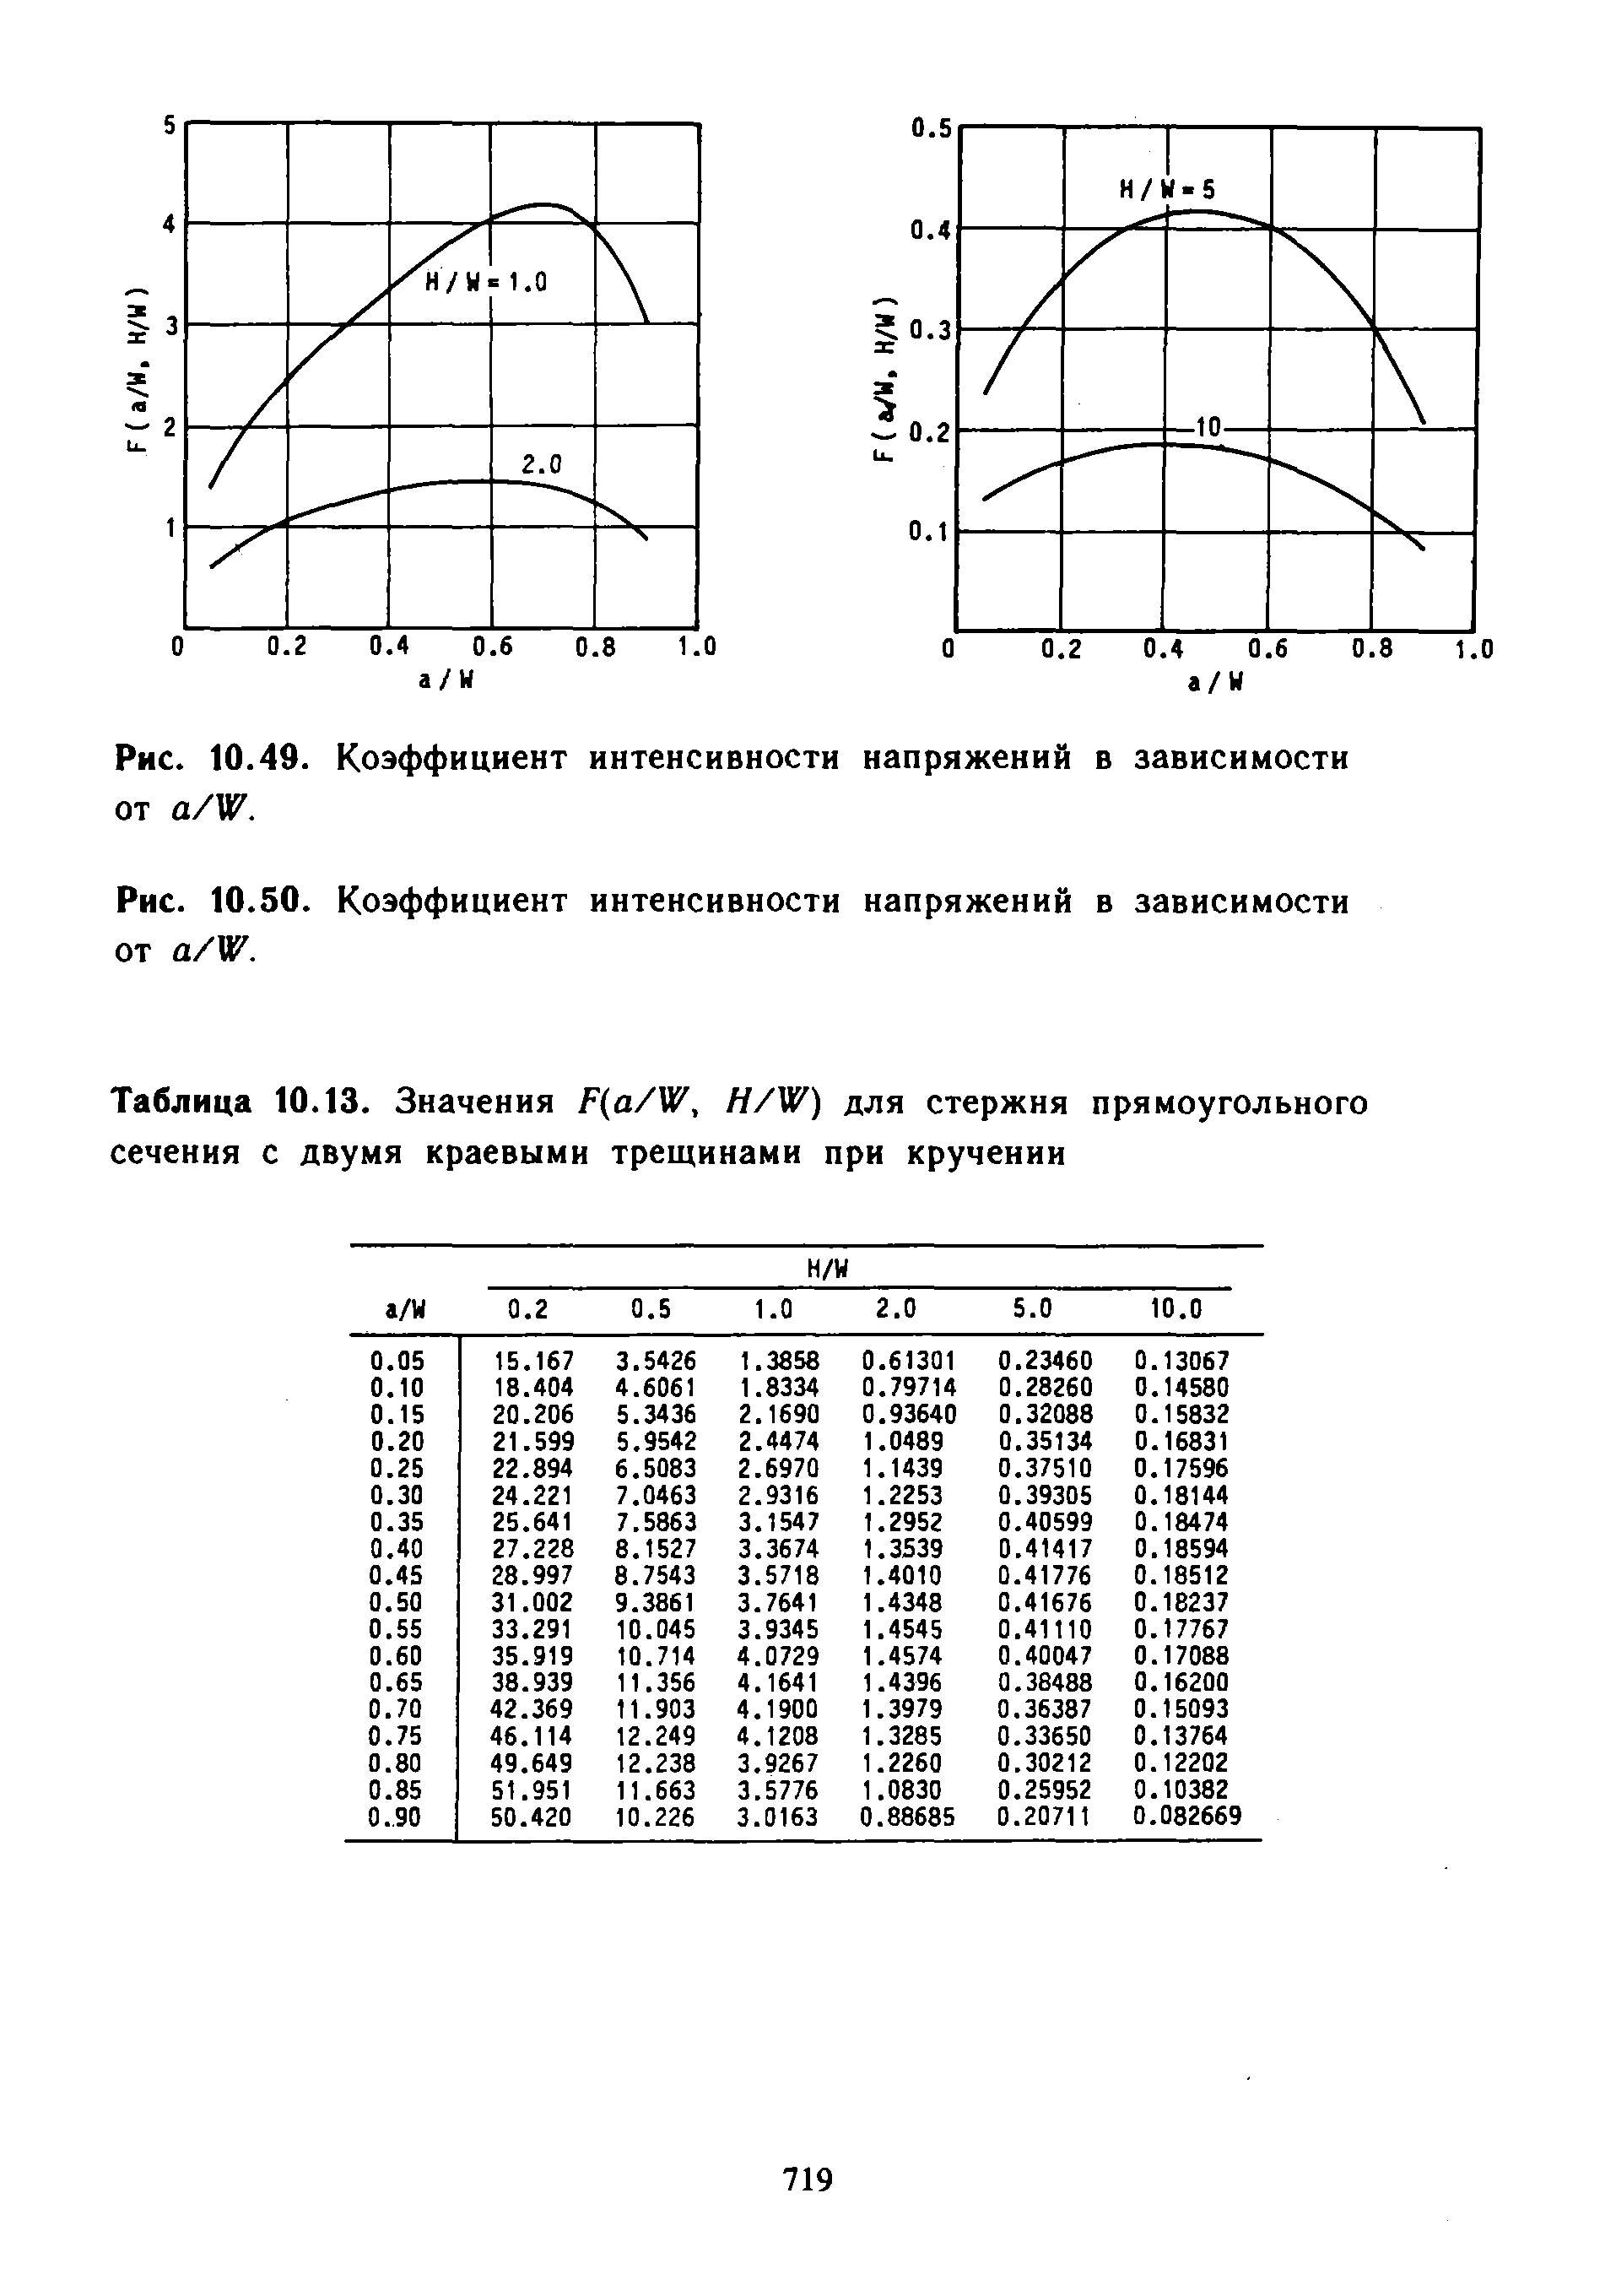 Таблица 10.13. Значения F(a/W, H/W) для стержня прямоугольного сечения с двумя краевыми трещинами при кручении
